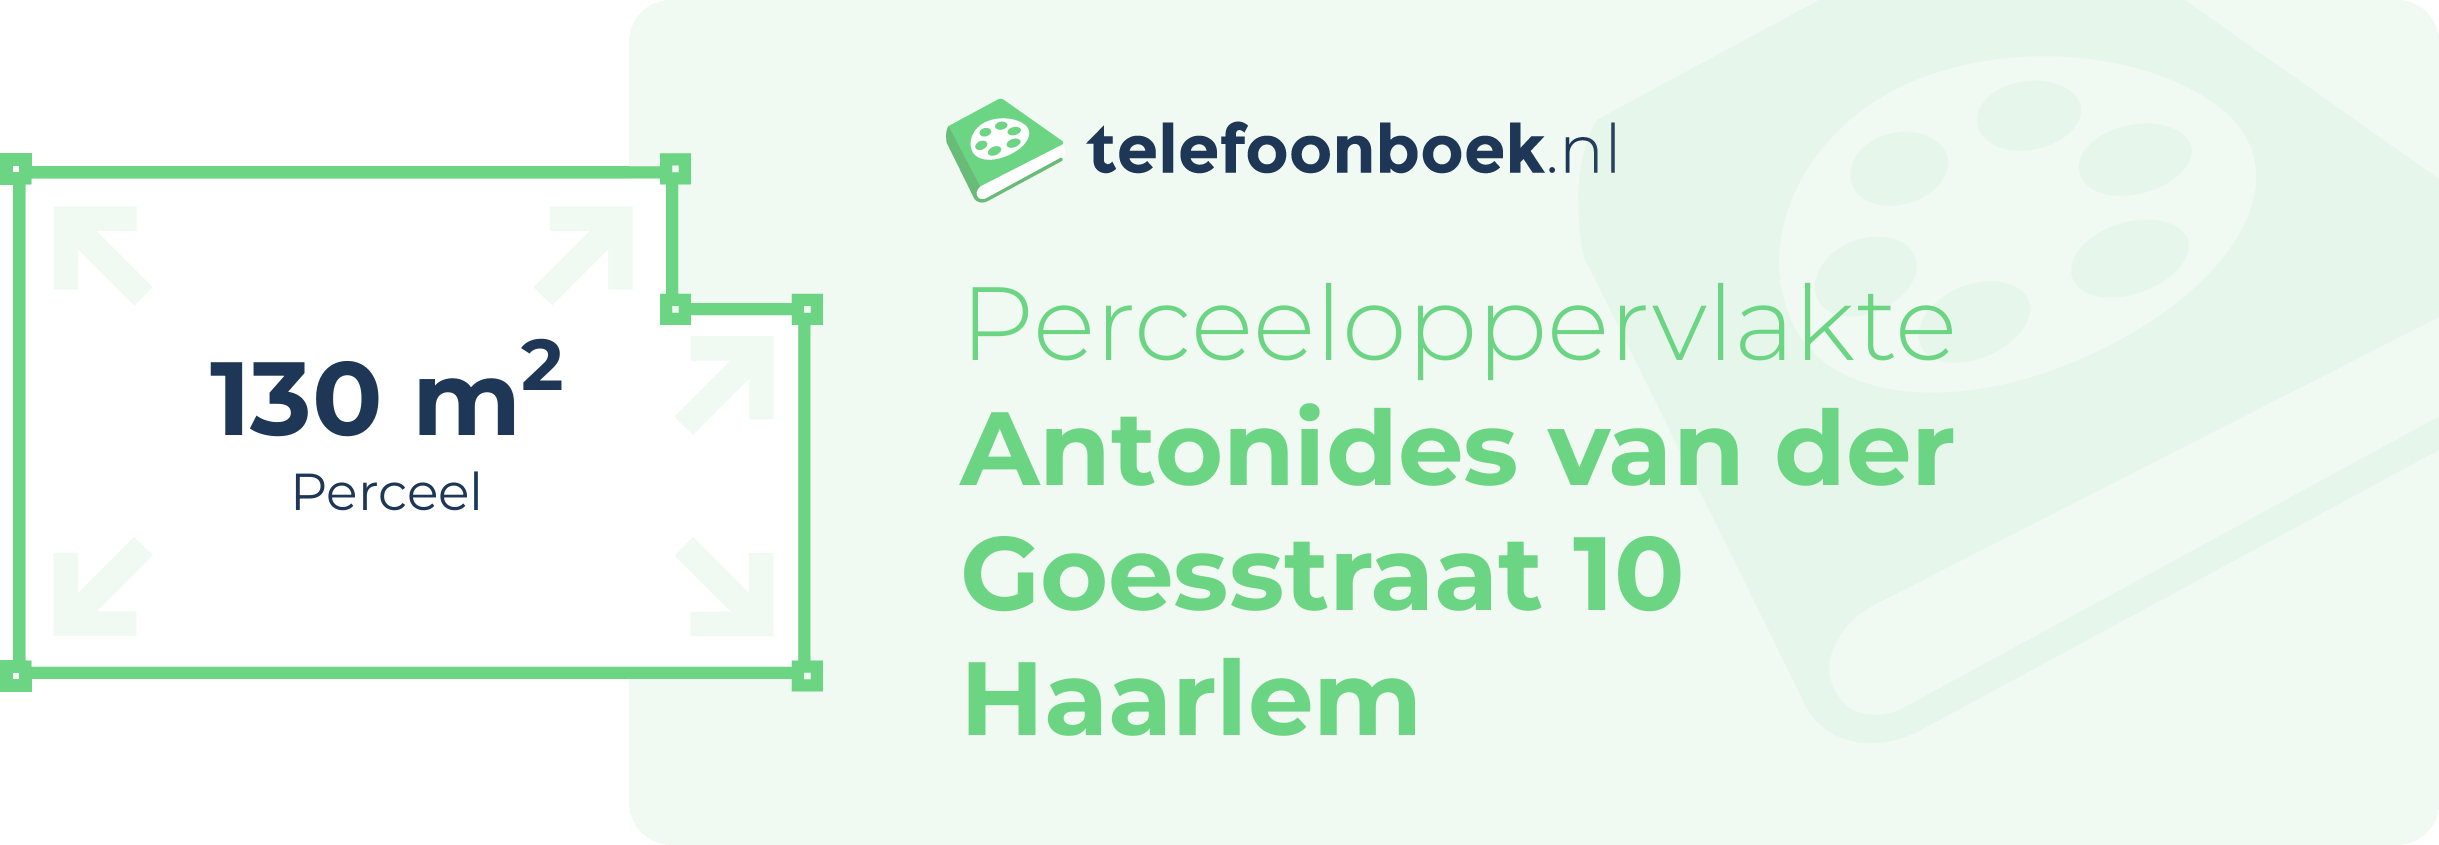 Perceeloppervlakte Antonides Van Der Goesstraat 10 Haarlem